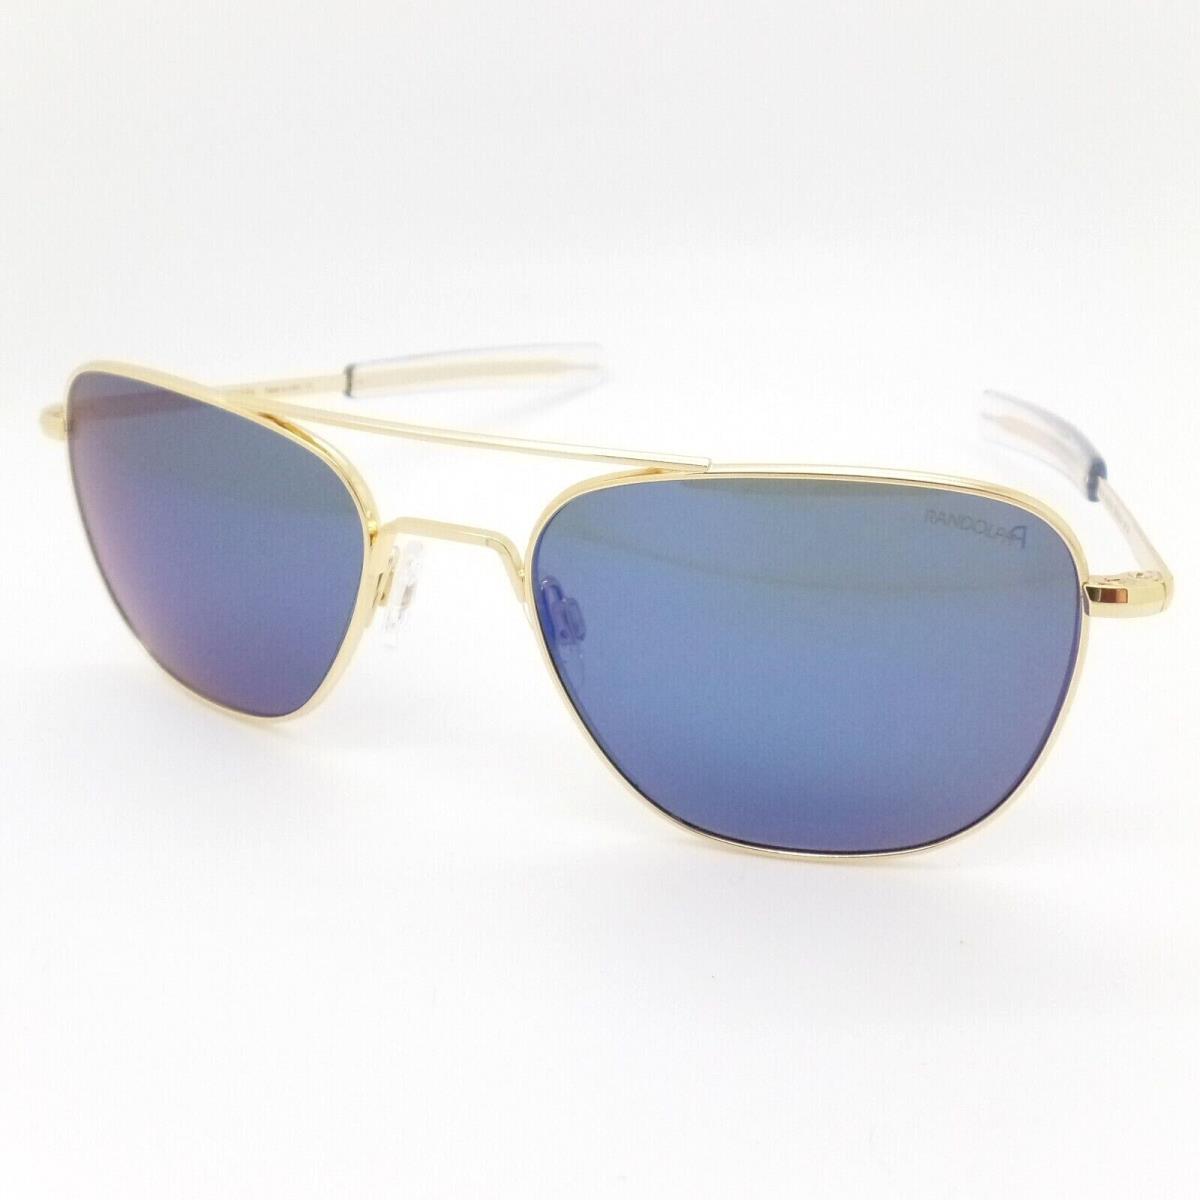 Randolph sunglasses Aviator - Frame: 23K Gold, Lens: Atlantic Blue 1